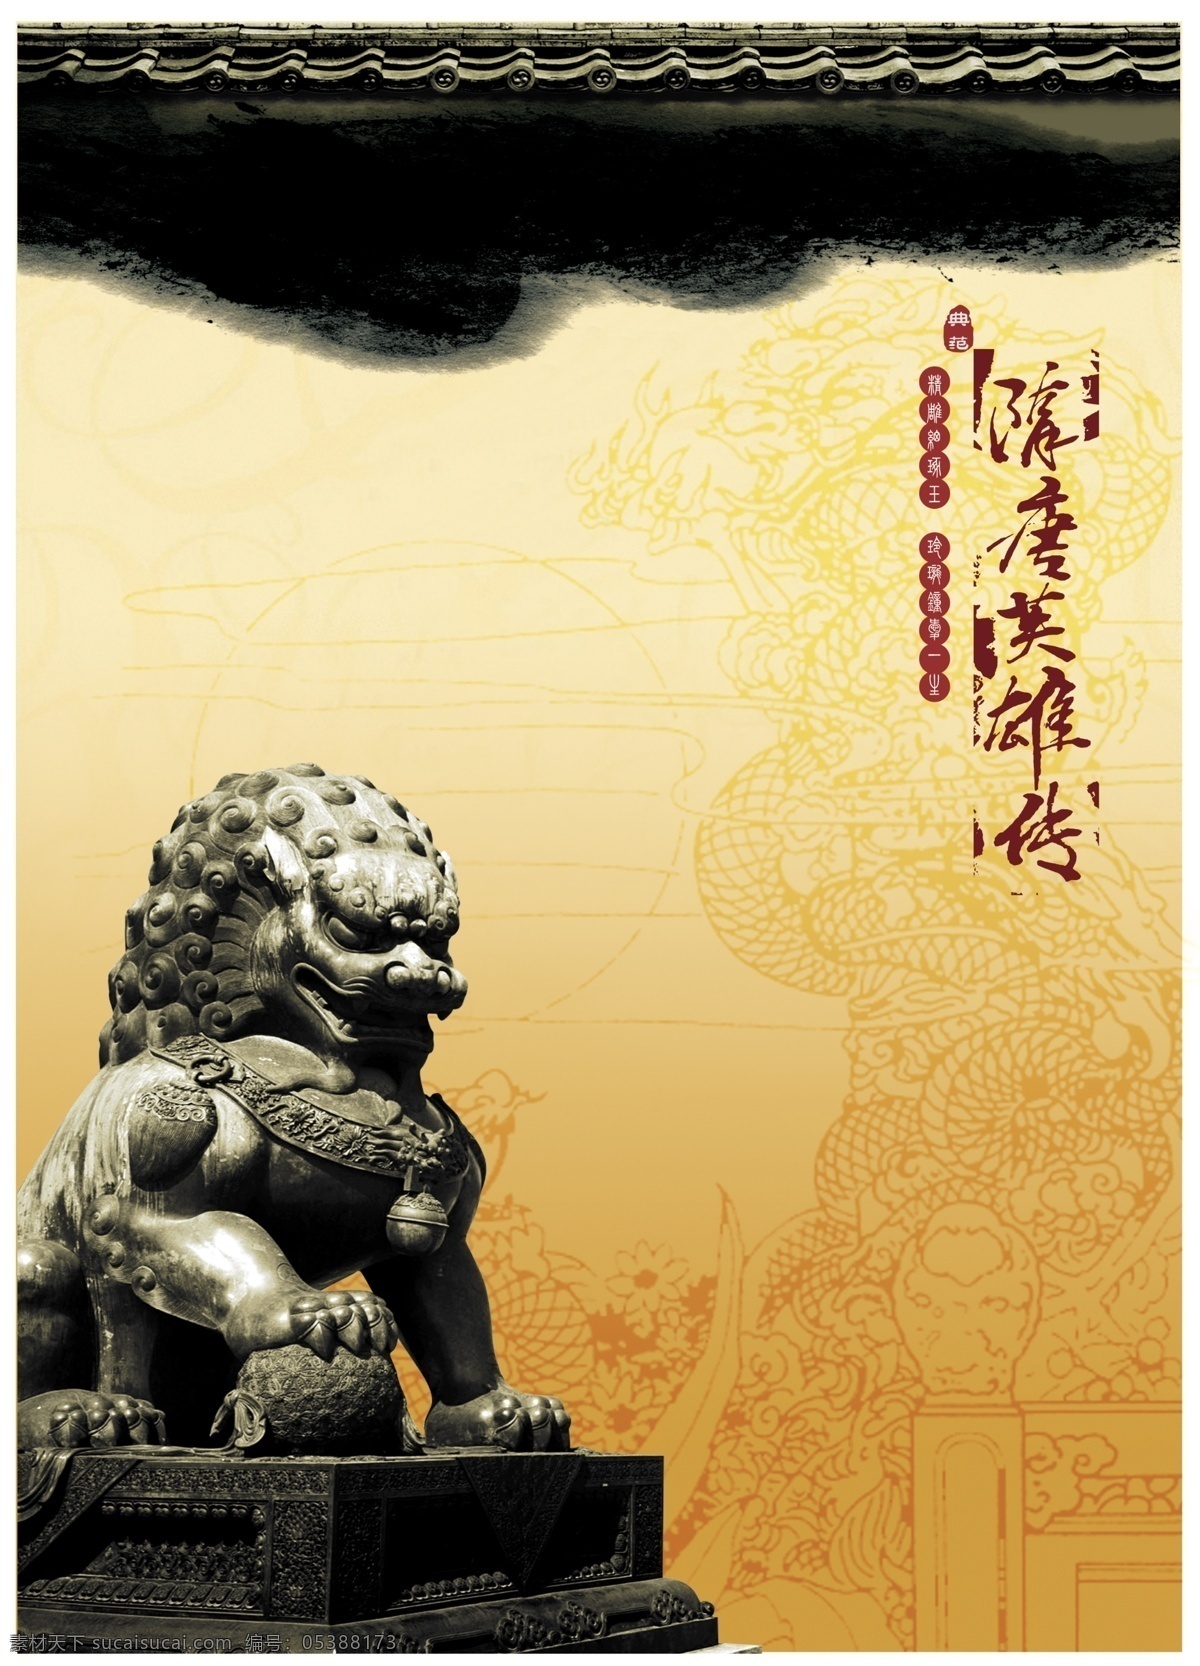 石狮子 黄色底纹 龙纹 石狮 中国风 中国传统素材 中国素材 中国传统 中国风房地产